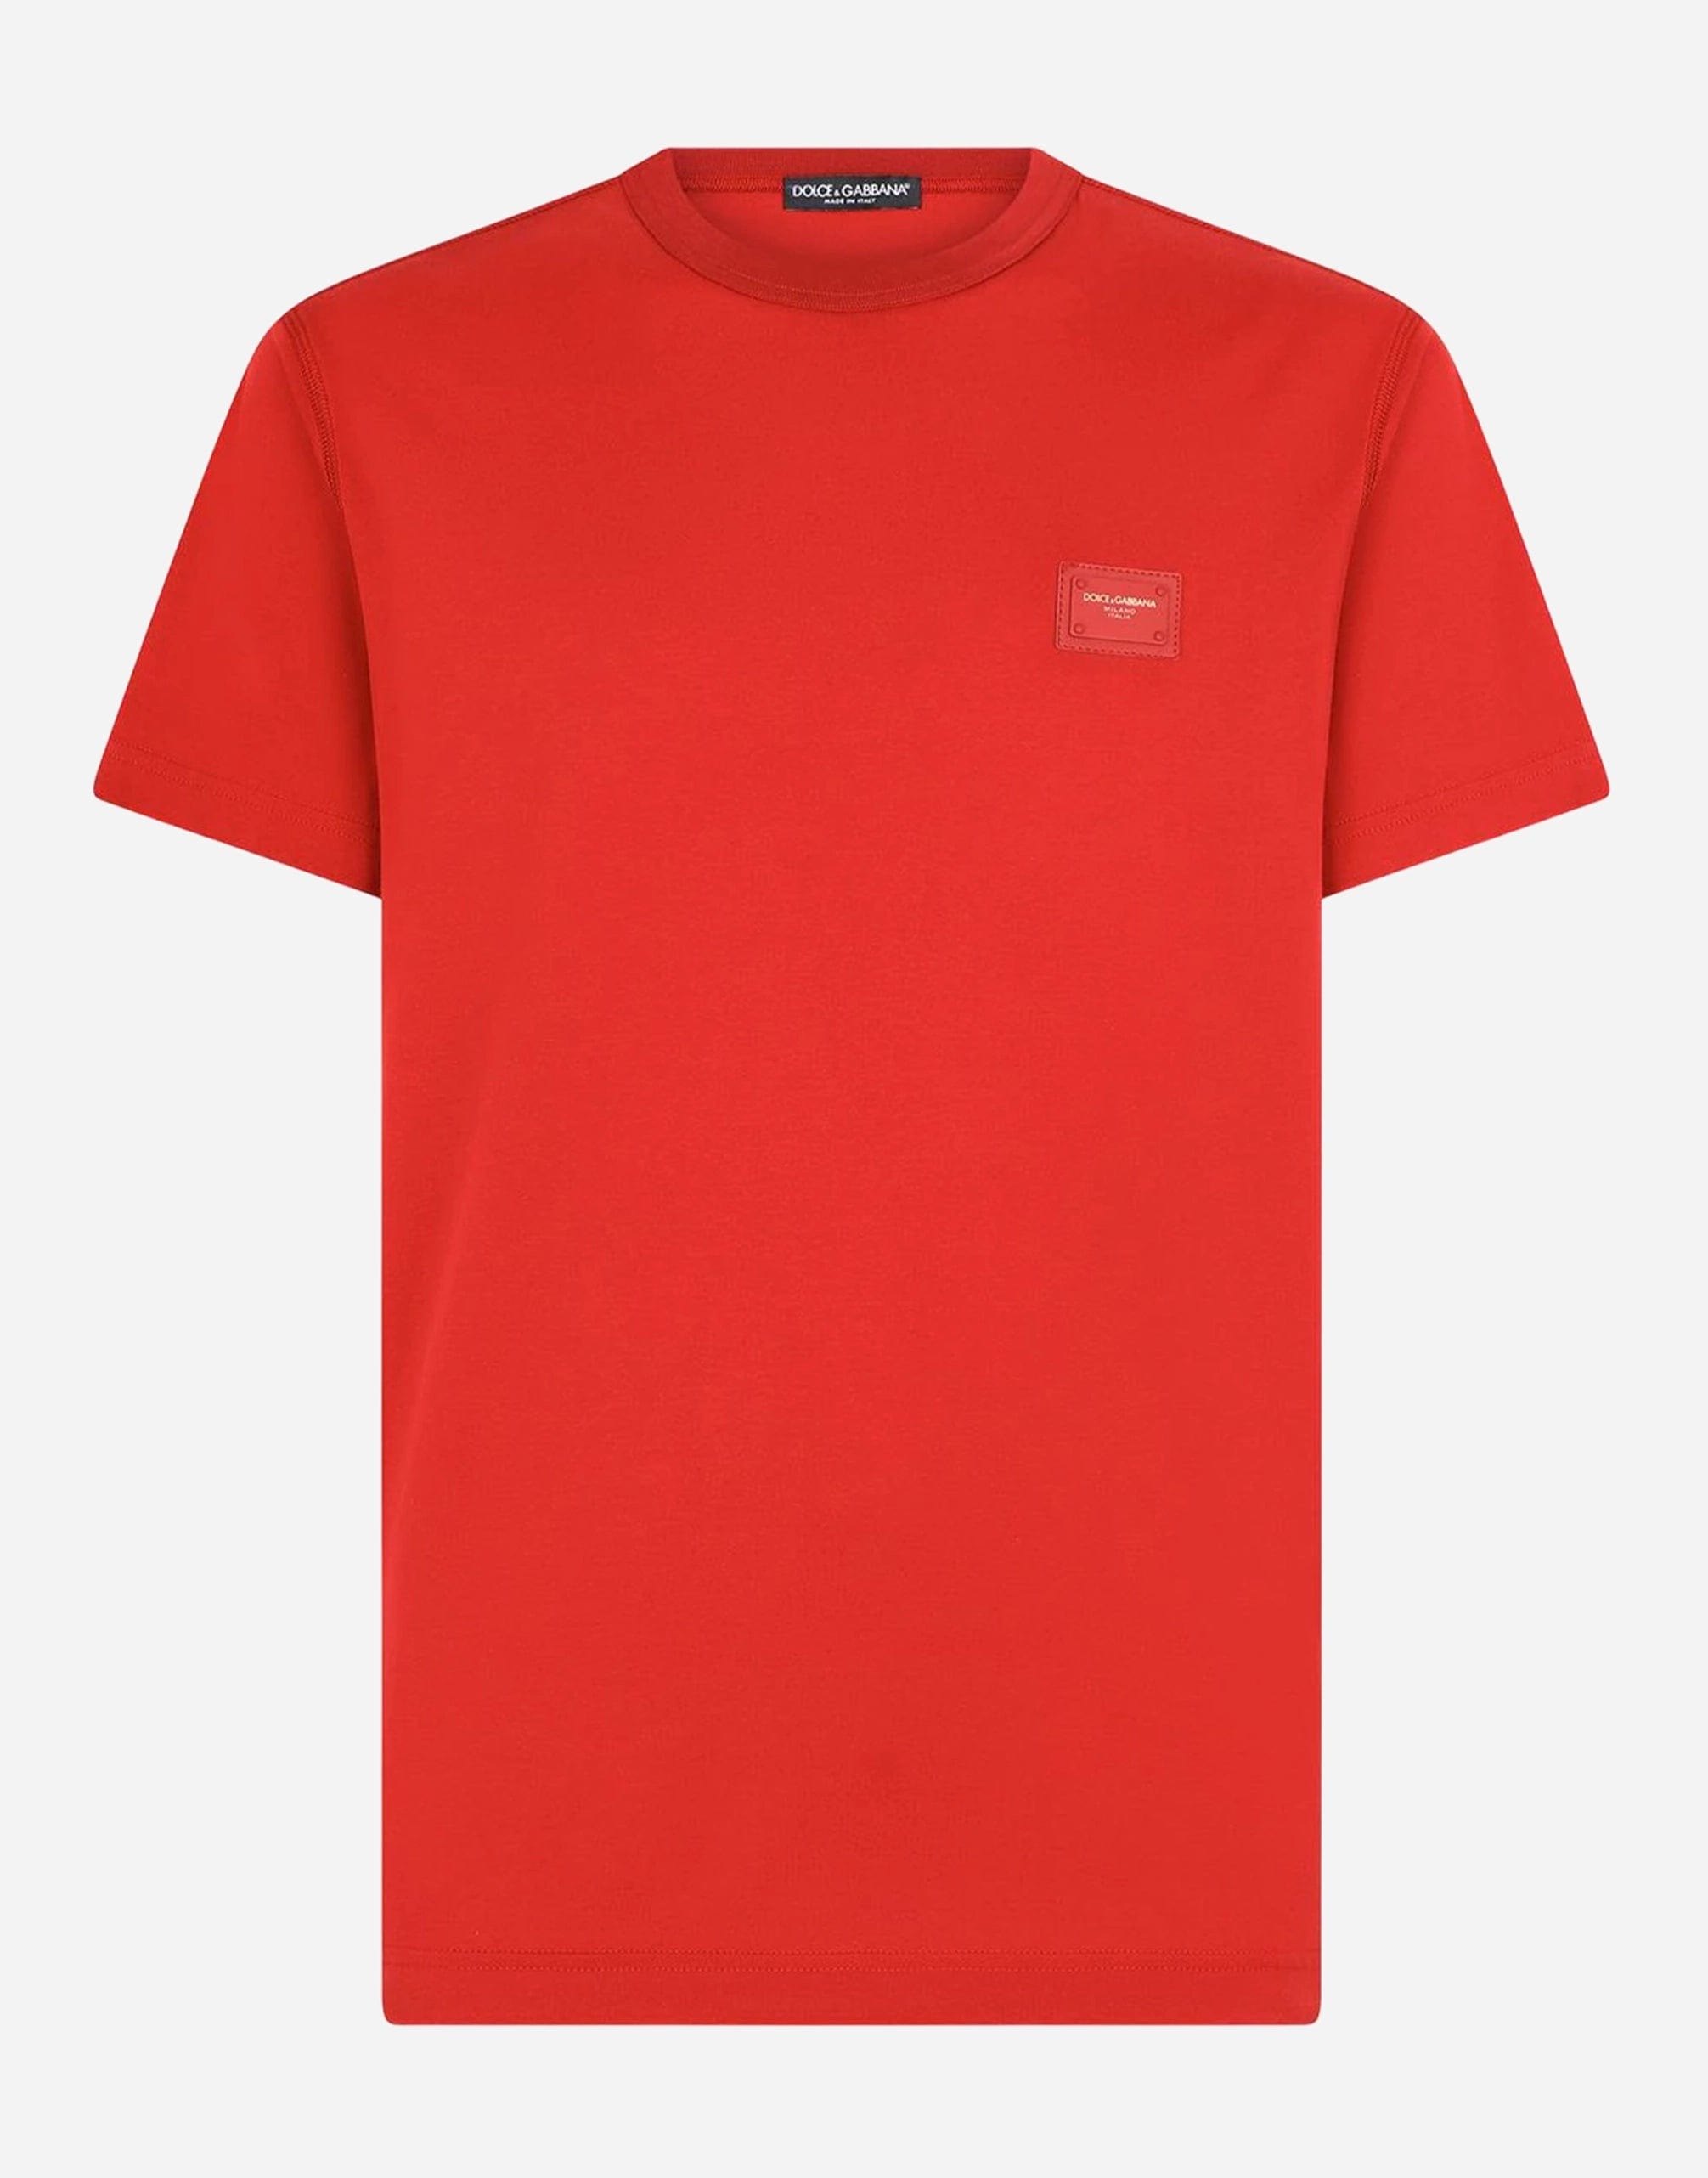 赤いブランドプレート付きの綿Tシャツ